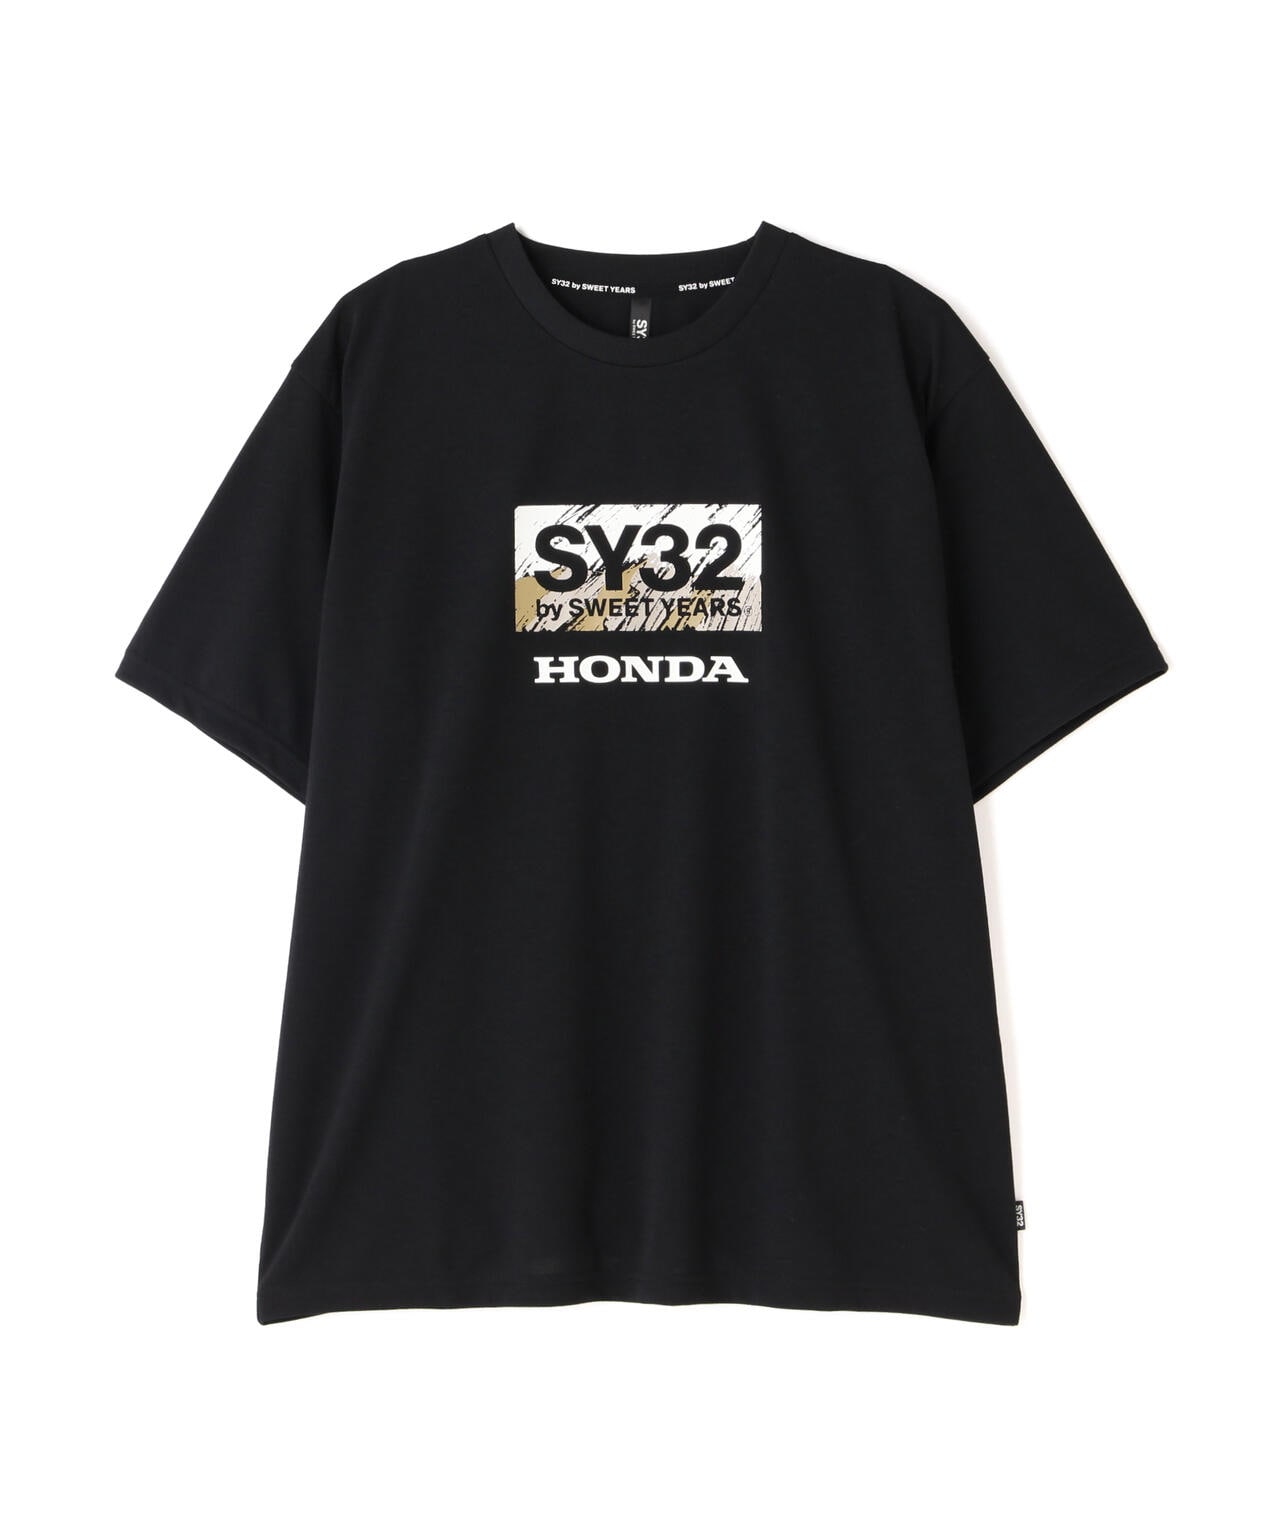 SY32 by SWEET YEARS/HONDA COLLABORATION SY BOX | ROYAL FLASH 